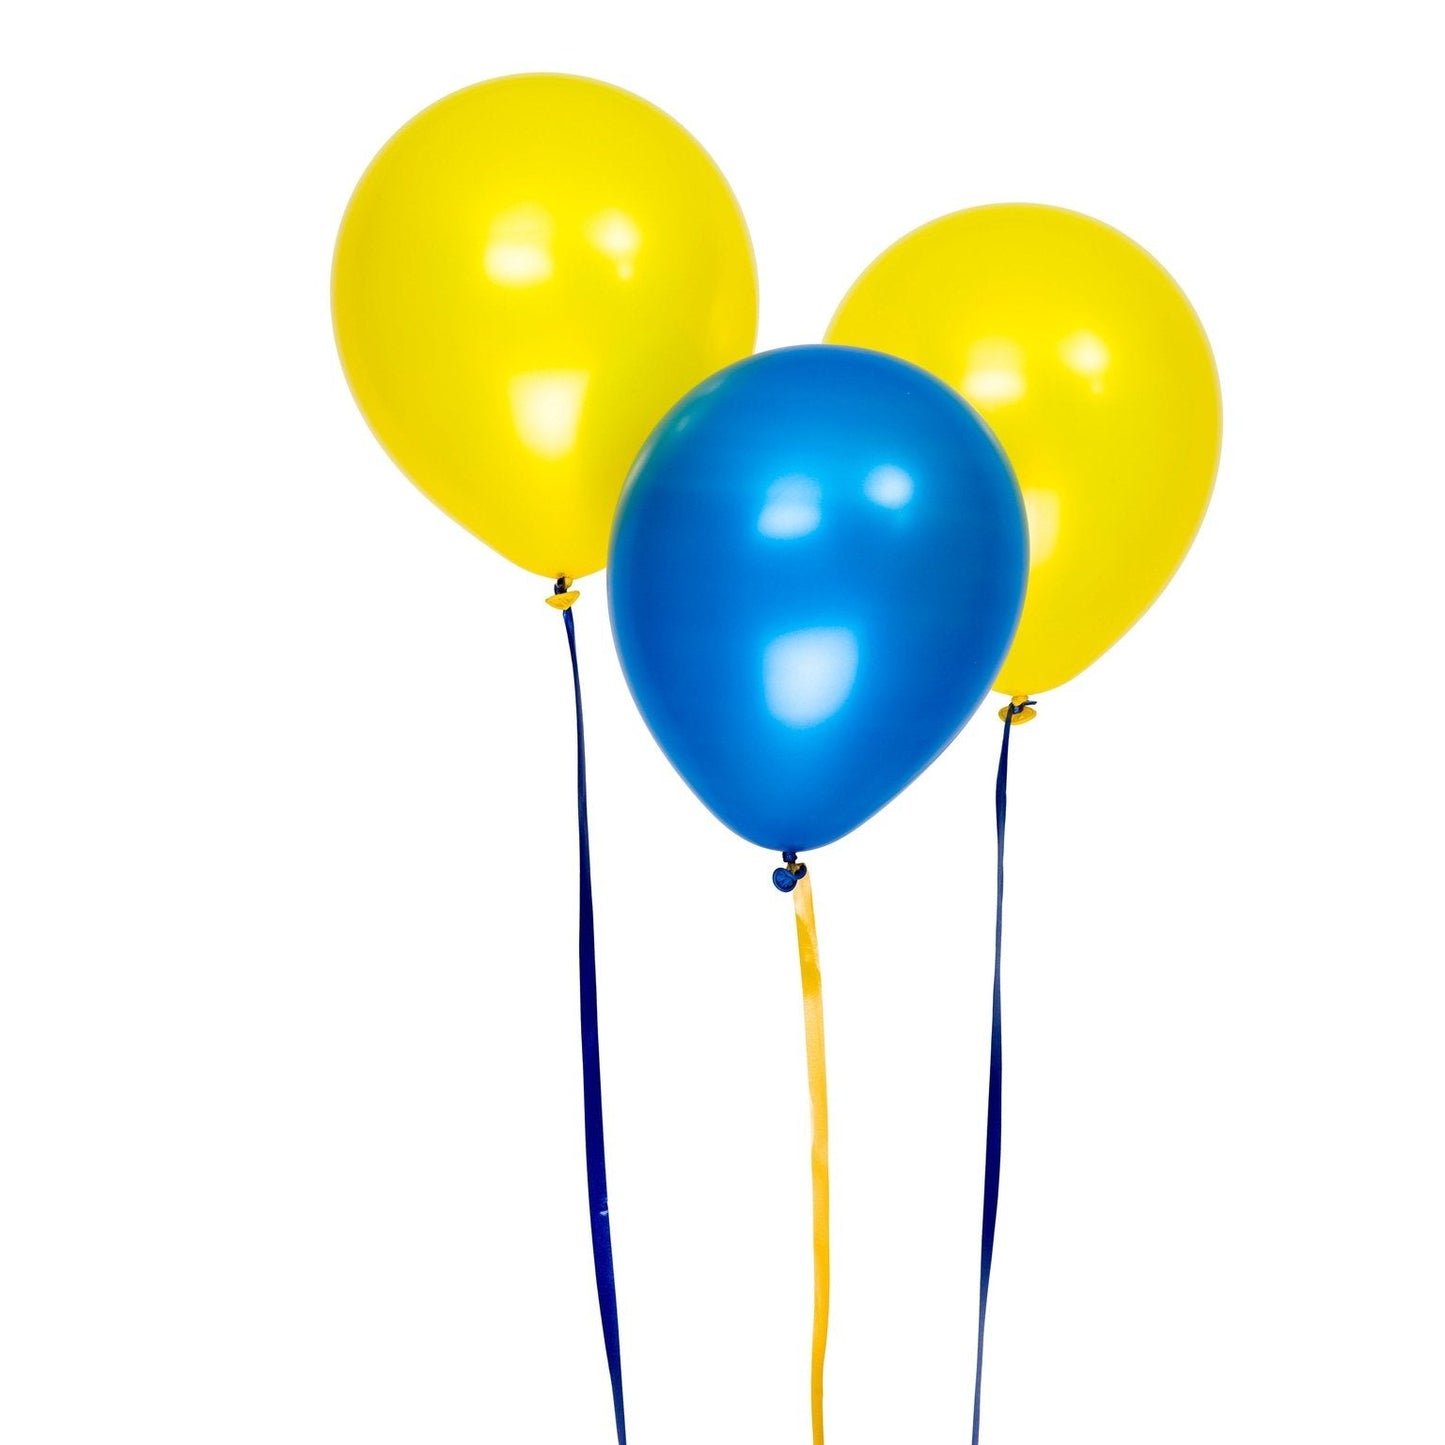 Metallicballonger 30cm, 8st, blå och gula sorterade. DesignHouse95 - Ballonggrossist - Designhouse95 - Grossist Ballonger - Snabba Leveranser - Engångsartiklar, Student, Jul, Nyår, Fest, Kalas